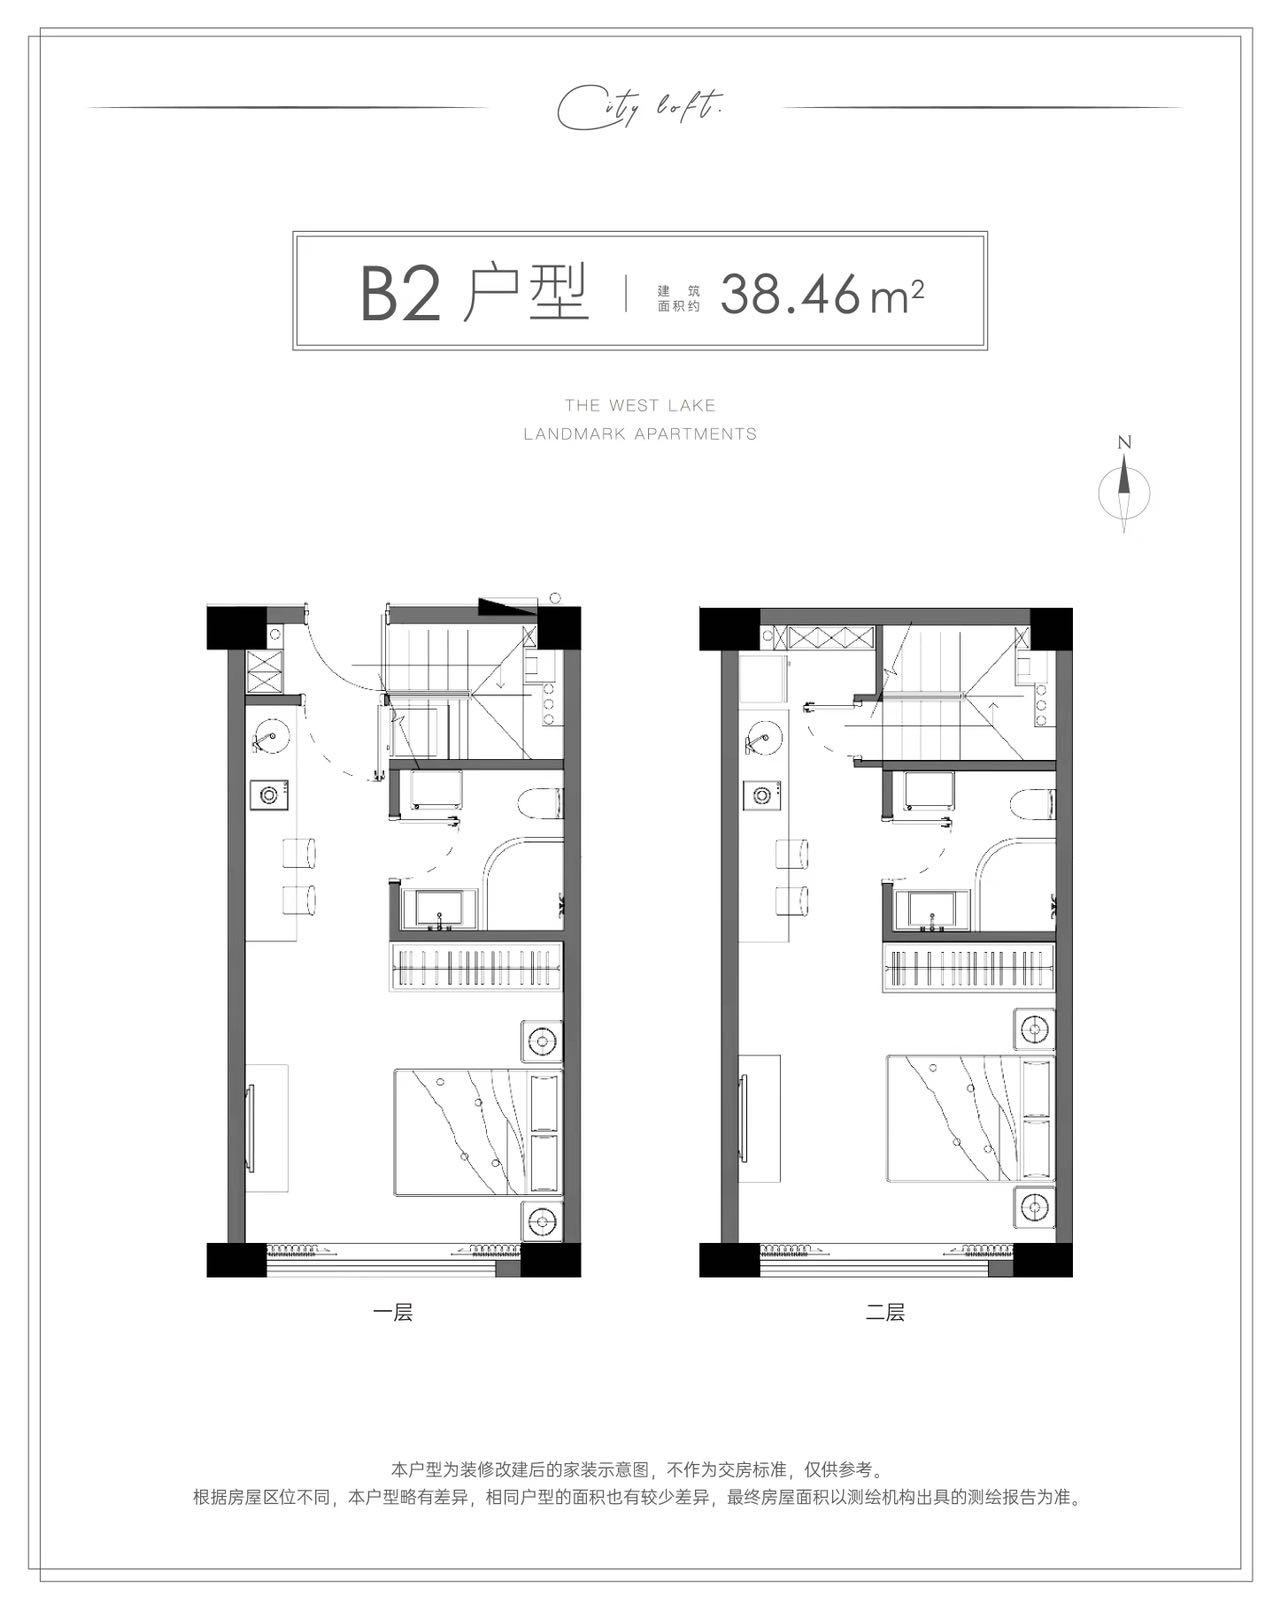 华海园三期公寓户型,B2  LOFT 双钥匙